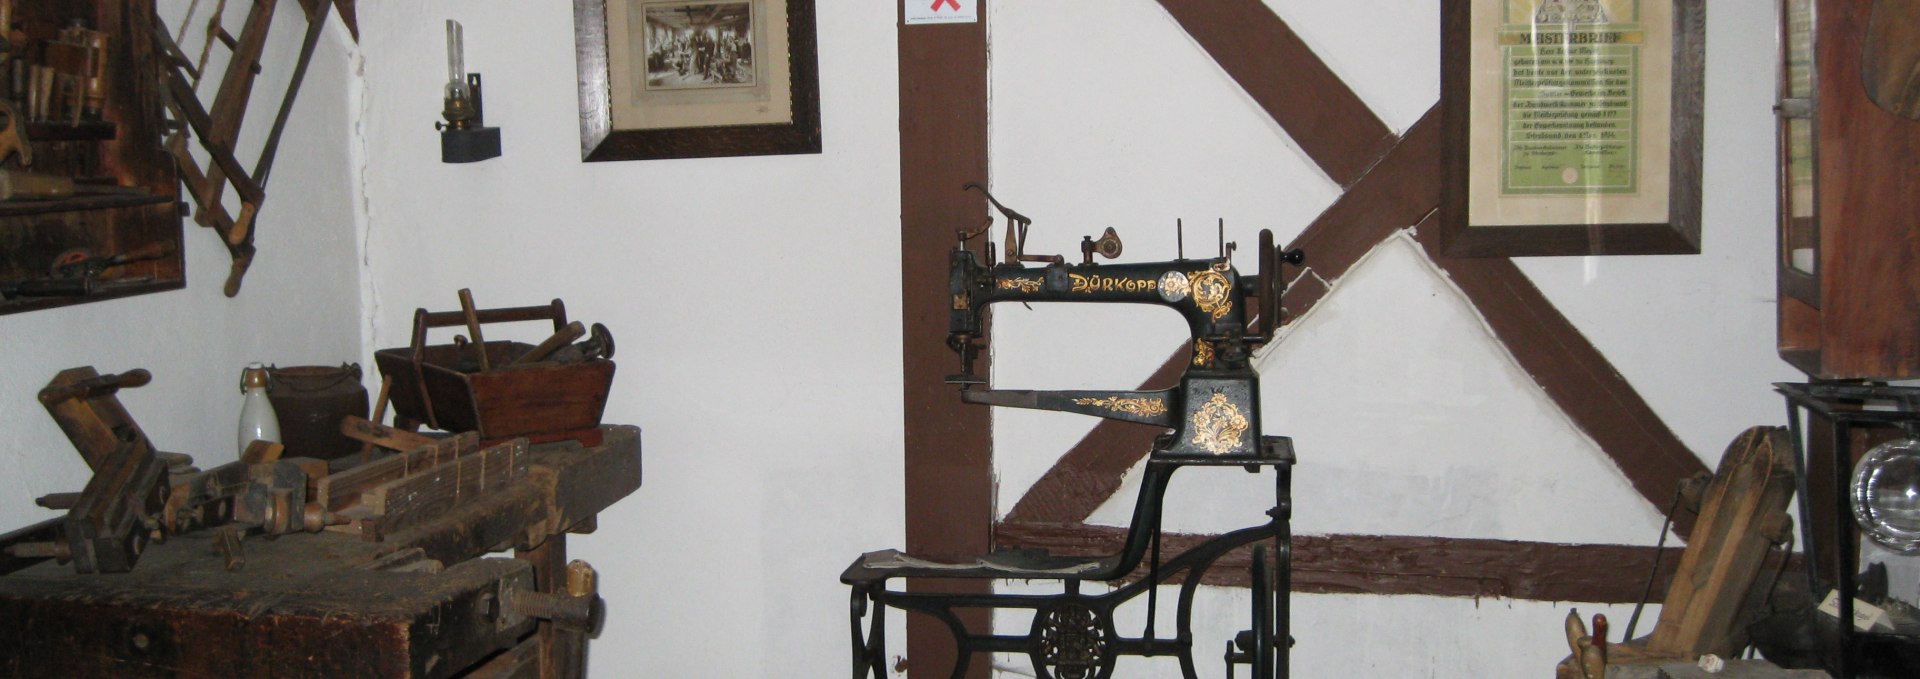 Alte Handwerkskunst wird in der Wassermühle Lassan vorgestellt